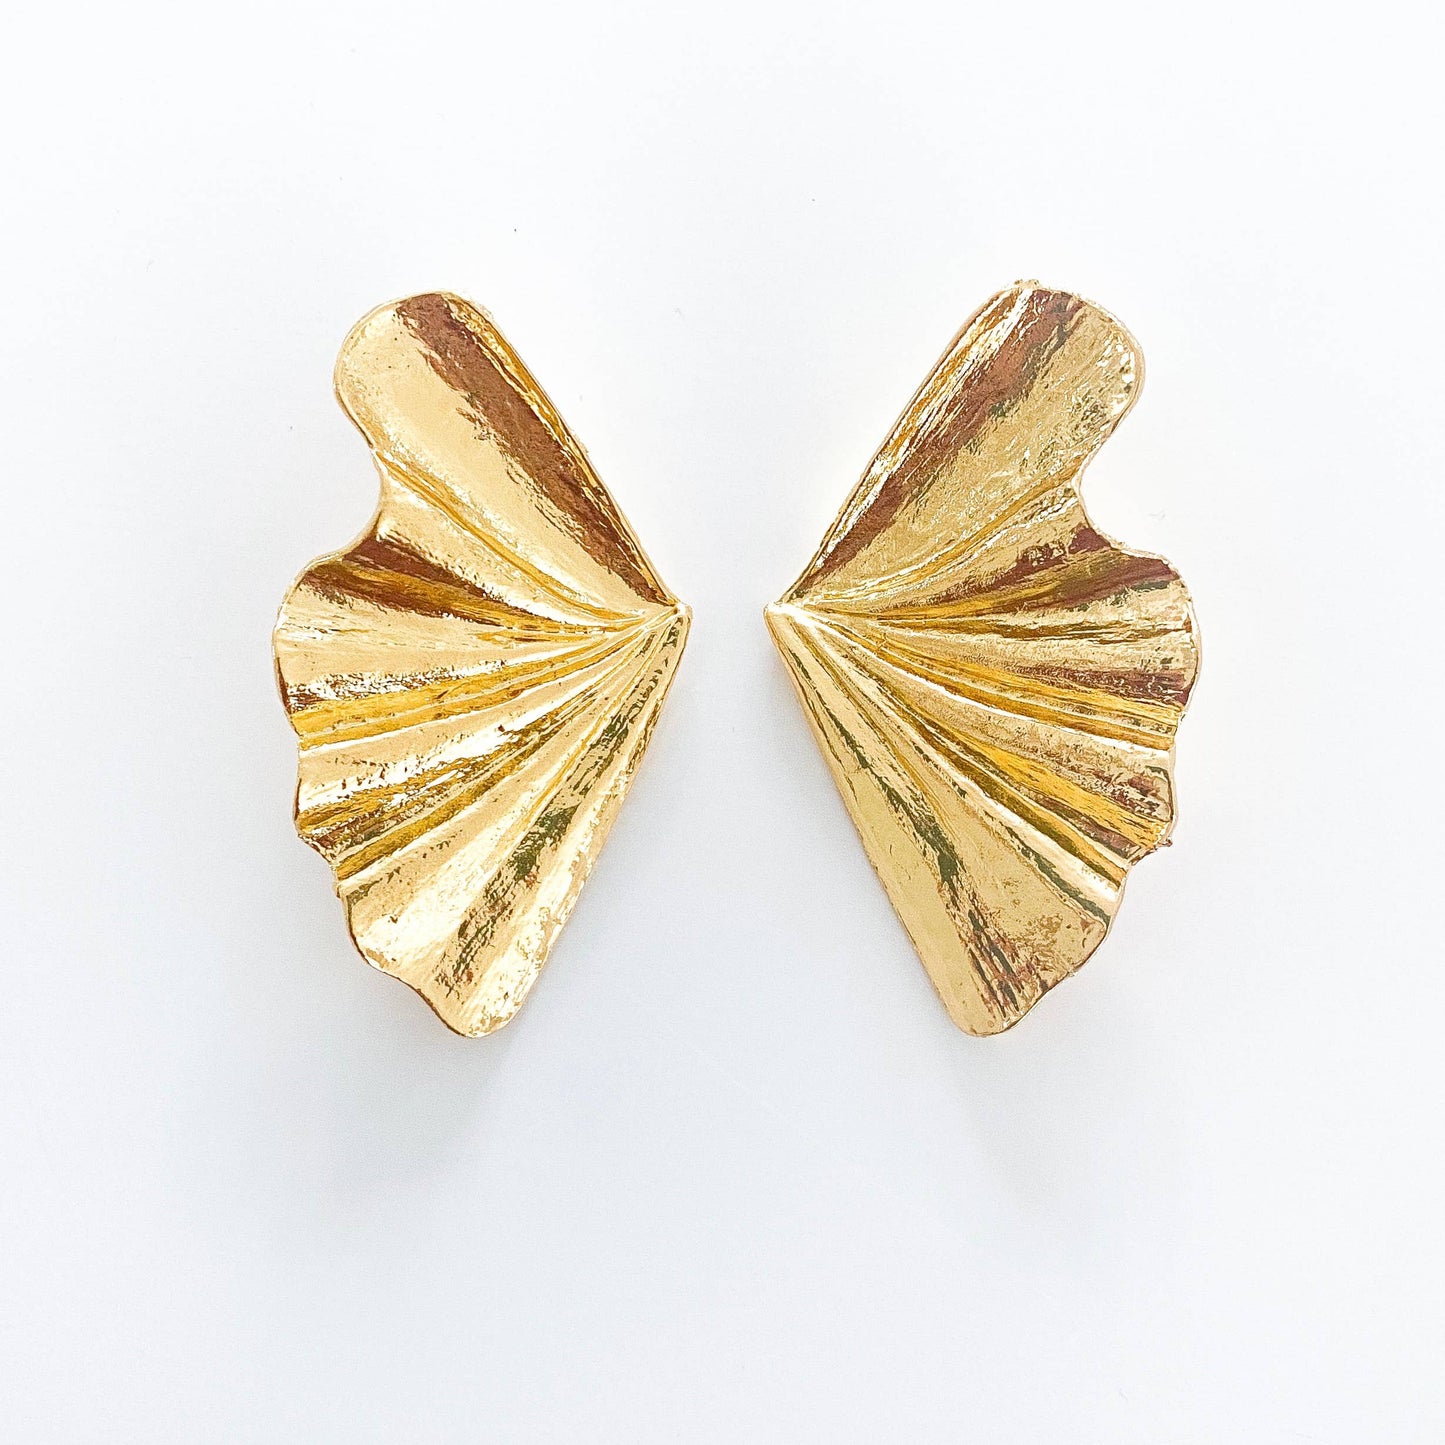 Fan Gold Statement Earrings